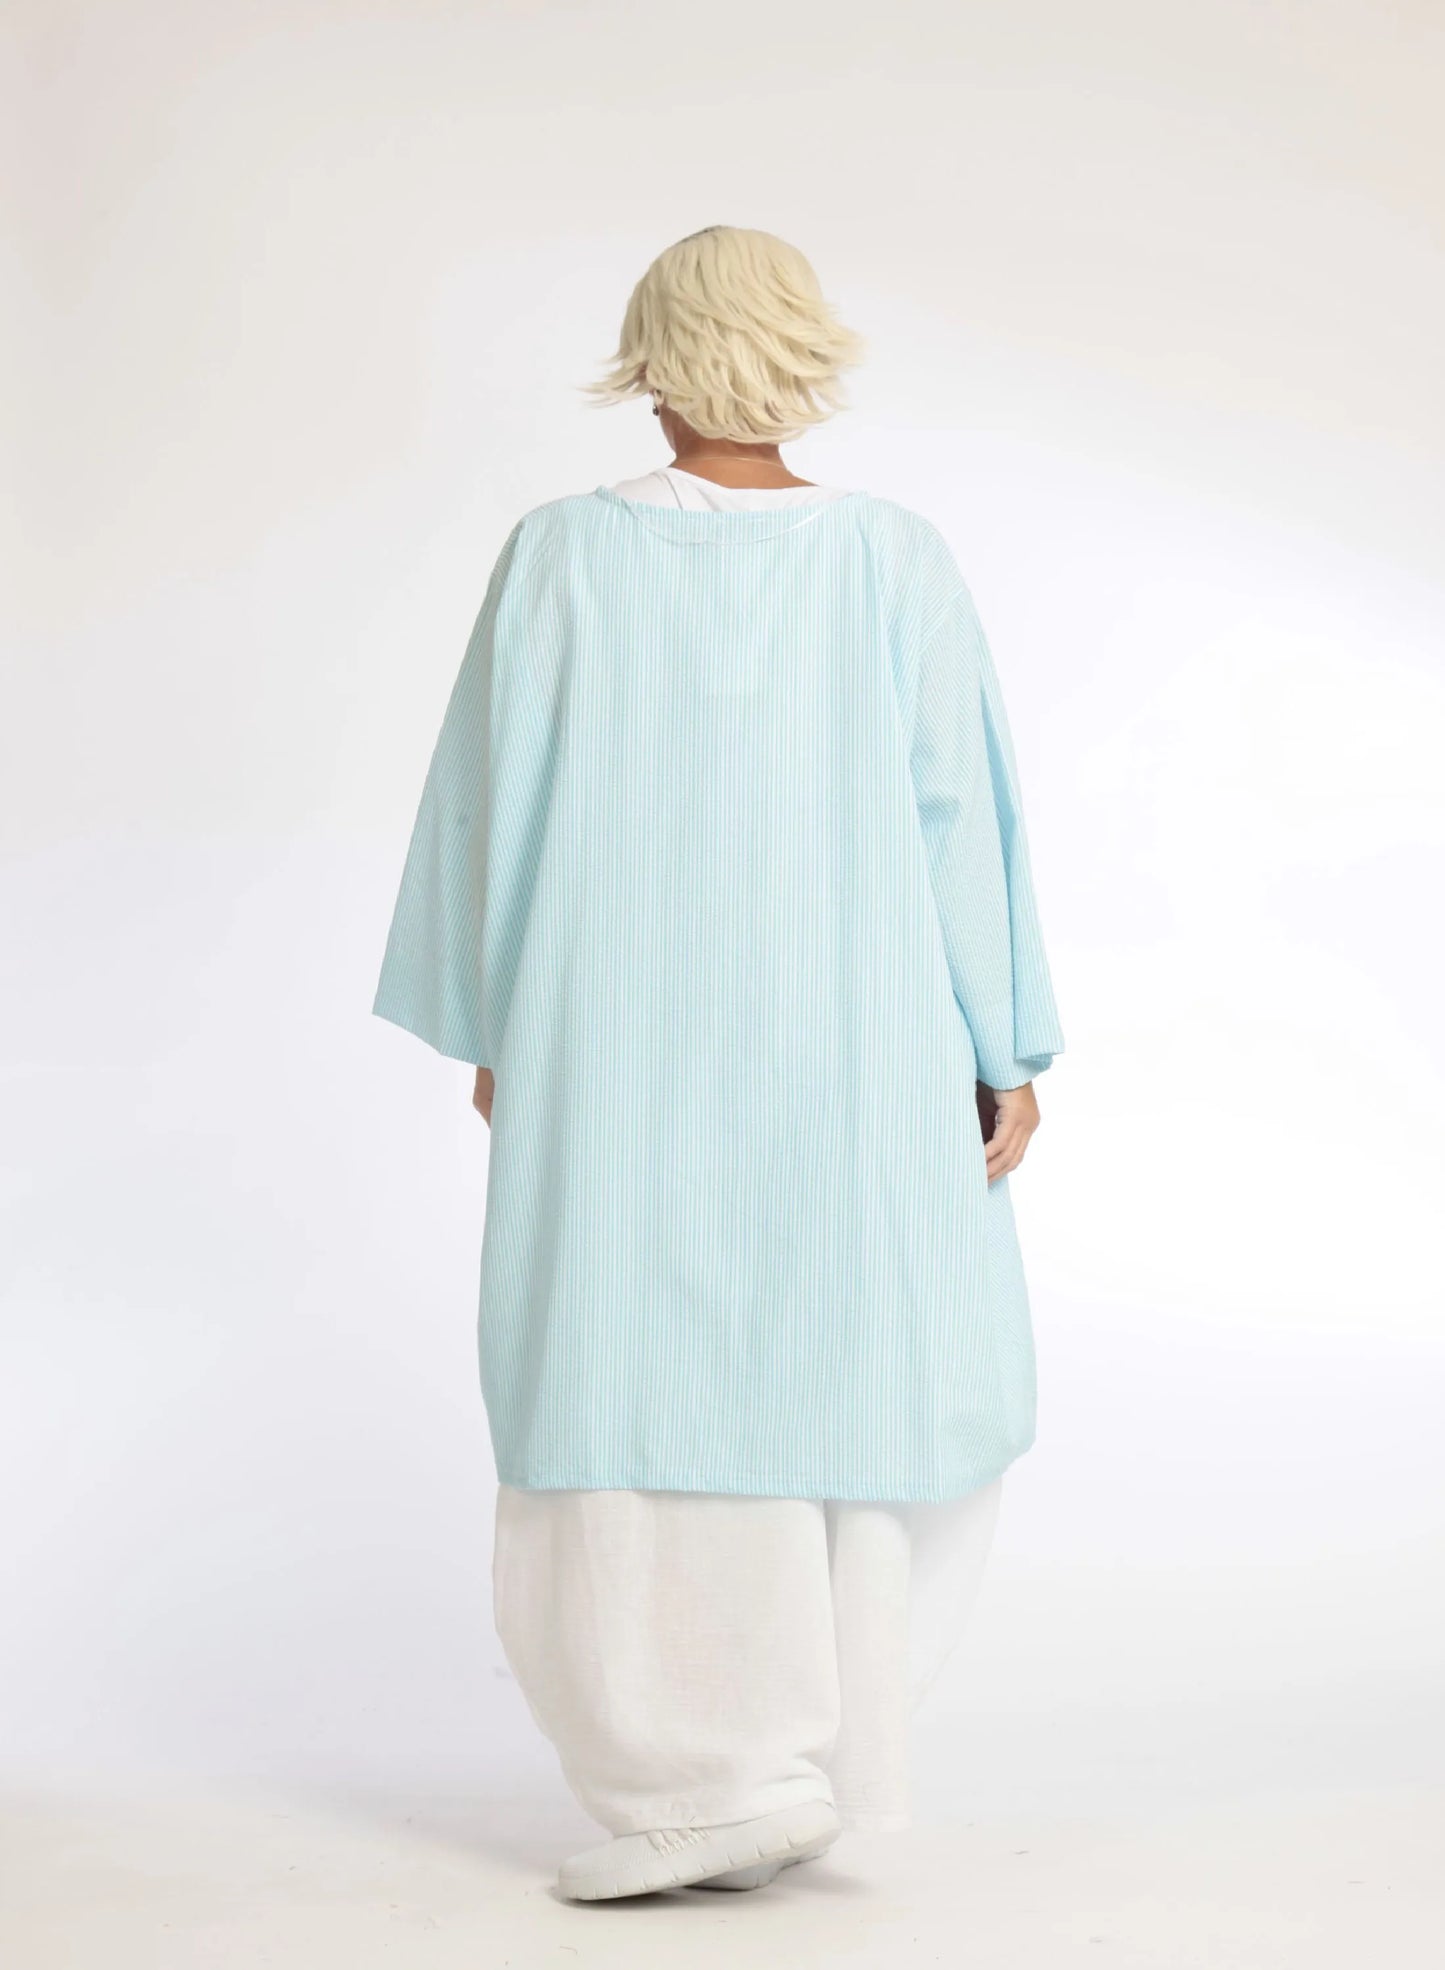 Sommer Bluse in A-Form aus weicher Seersucker Qualität, Tessa in Hellblau